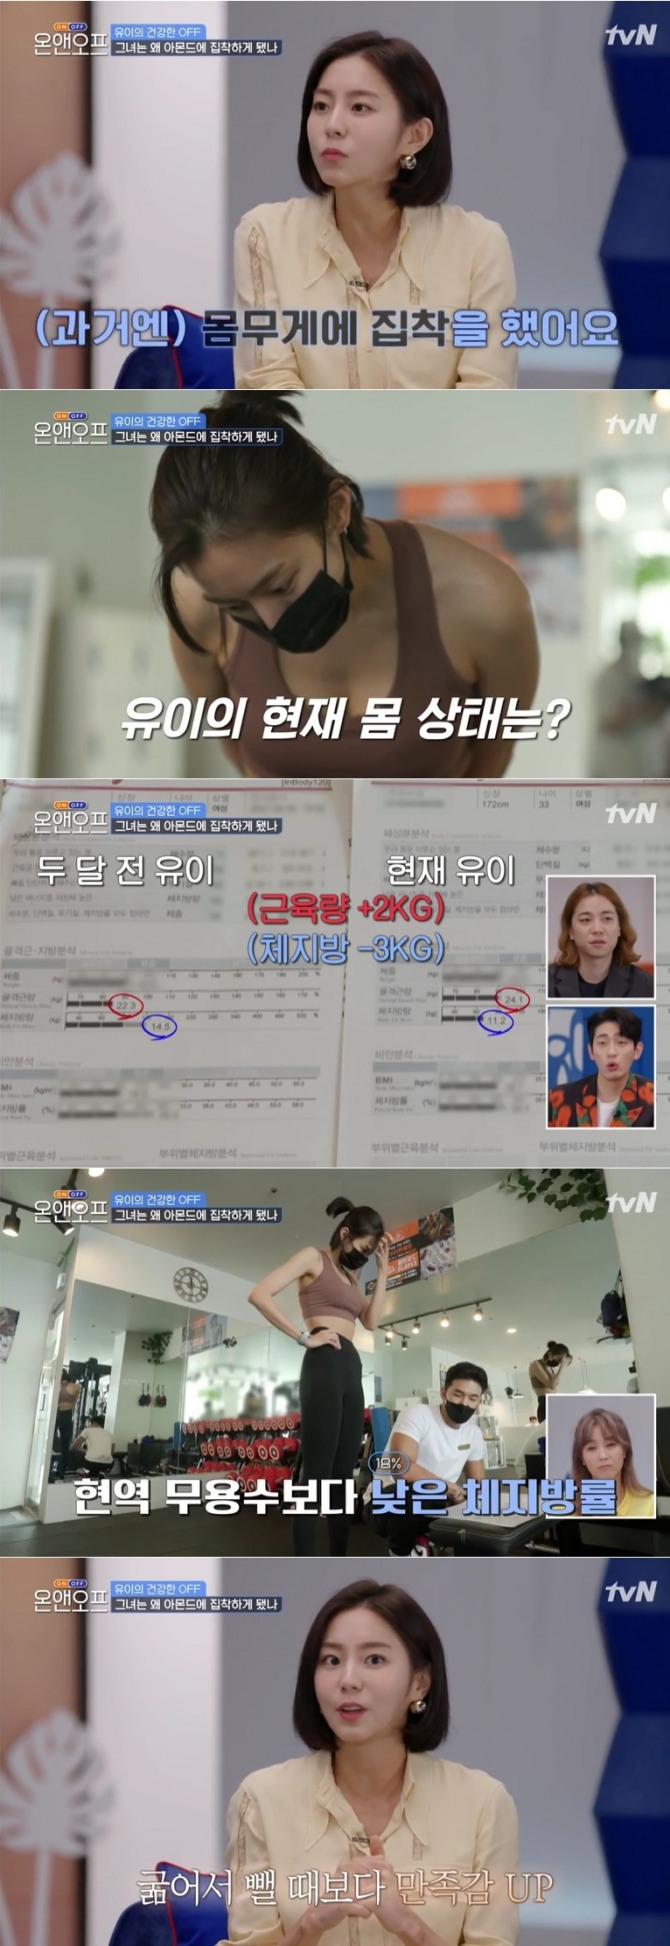 지난 27일 방송된 tvN '온앤오프'에는 배우 류이가 출연, 현역 무용수보다 낮은 체지방률을 공개해 눈길을 끌었다. 사진=tvN 